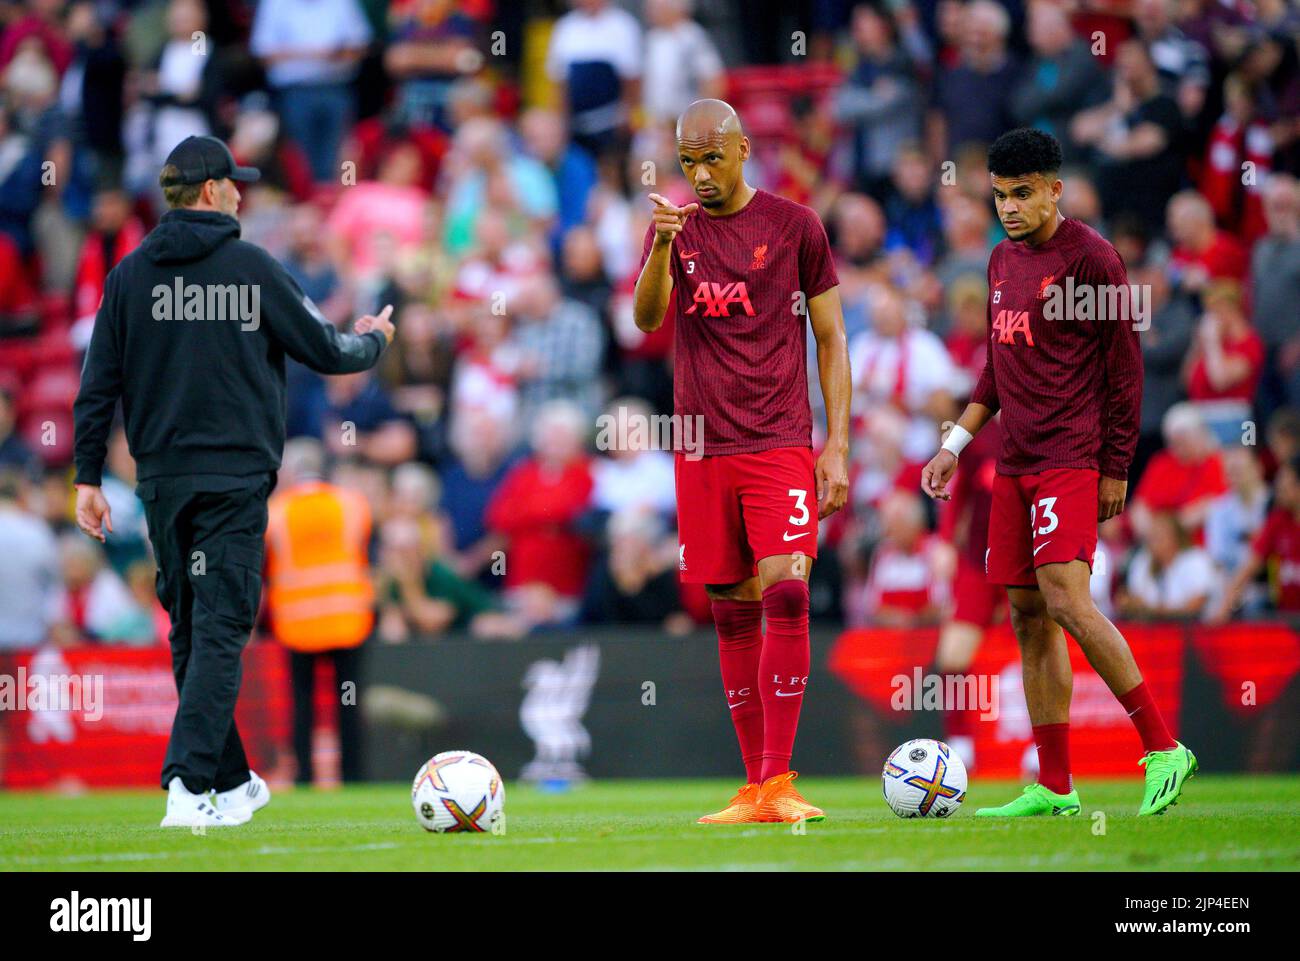 El Fabinho del Liverpool (centro) se calienta antes del partido de la Premier League en Anfield, Liverpool. Fecha de la foto: Lunes 15 de agosto de 2022. Foto de stock